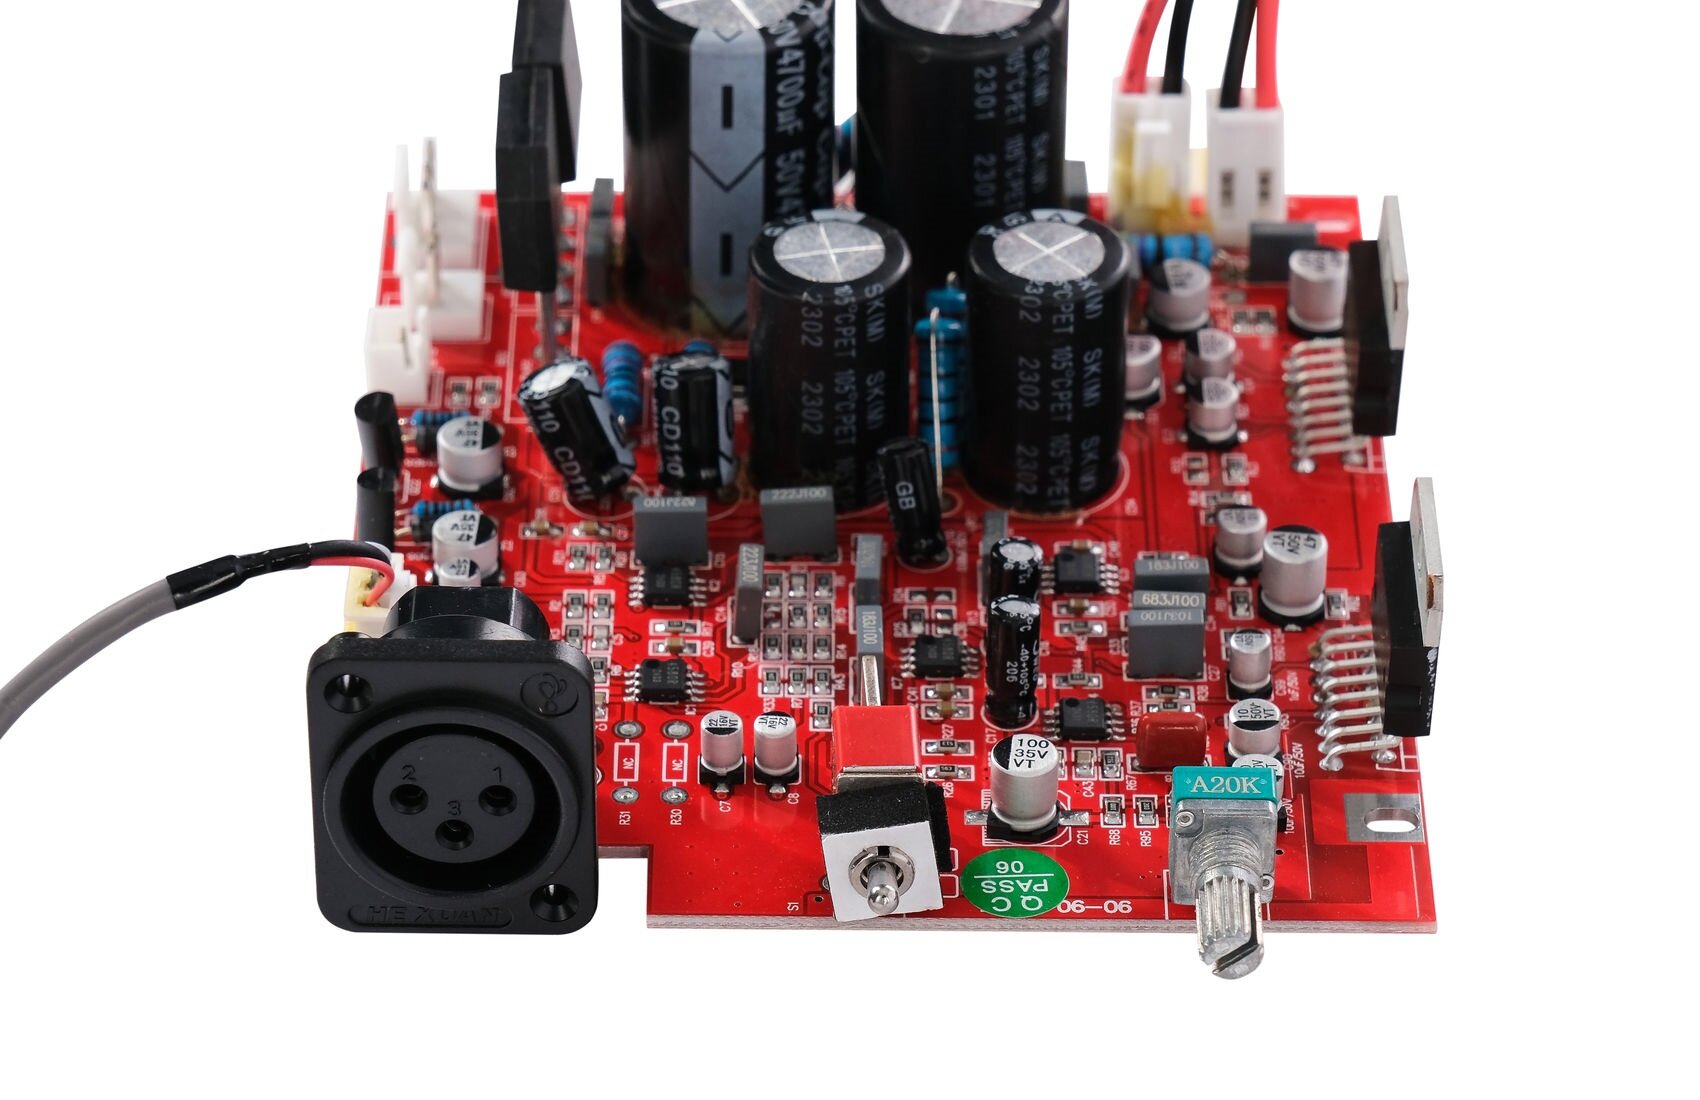 N-Audio Mother-board-C6C8X6X8G6G8M6M8 Плата для акустической системы C6, C8, X6, X8, G6, G8, M6, M8